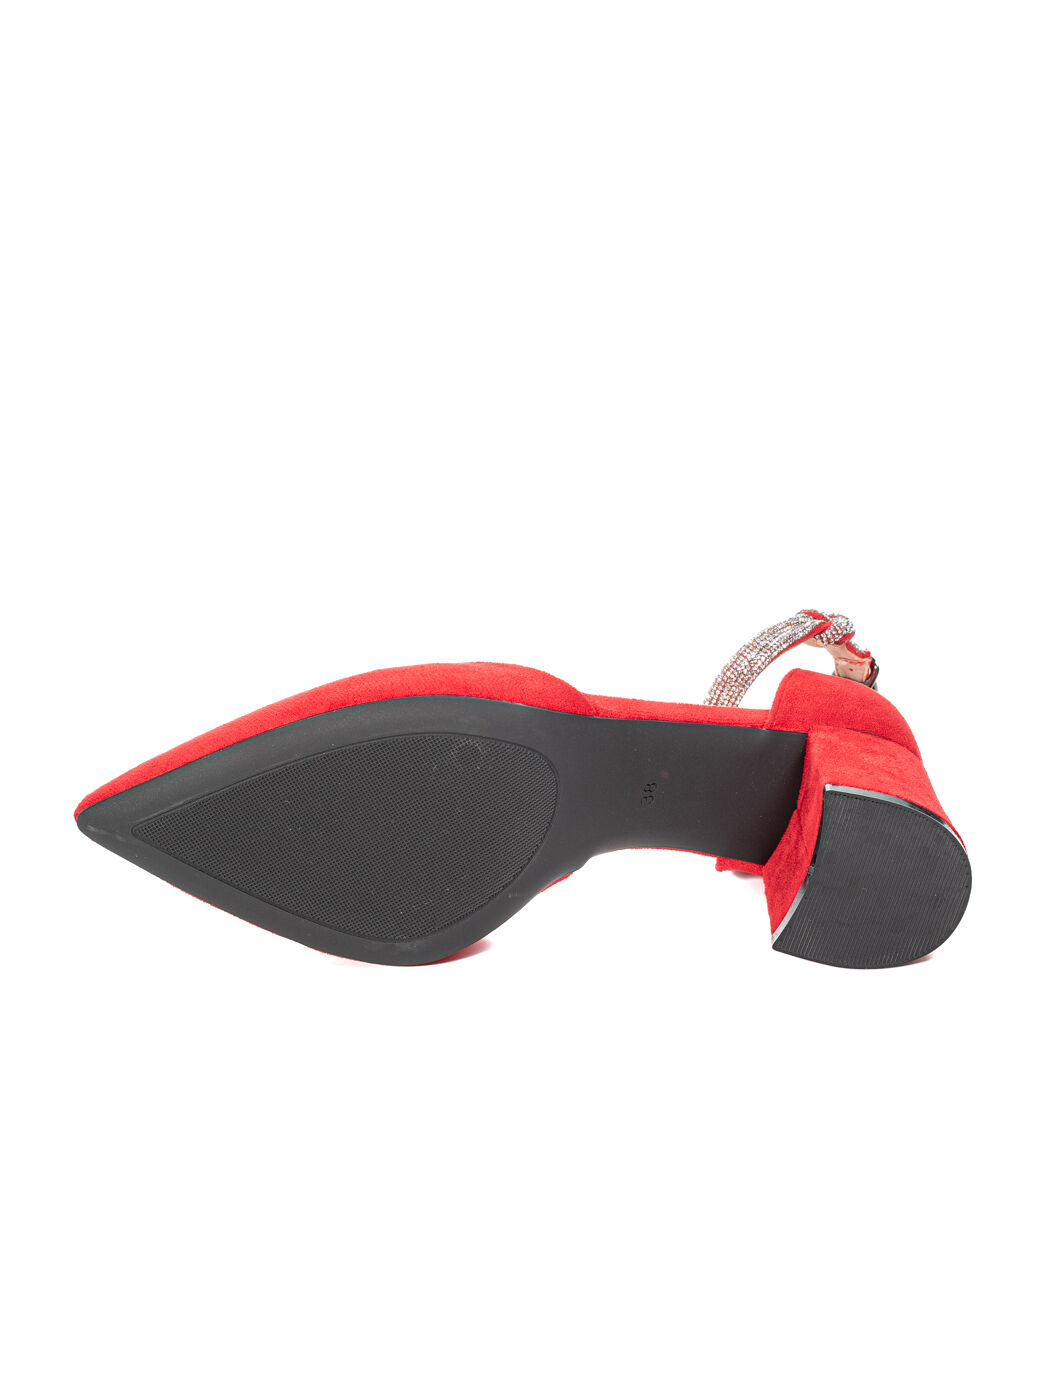 Туфли лодочки женские красные экозамша каблук устойчивый лето 1-red-M вид 1